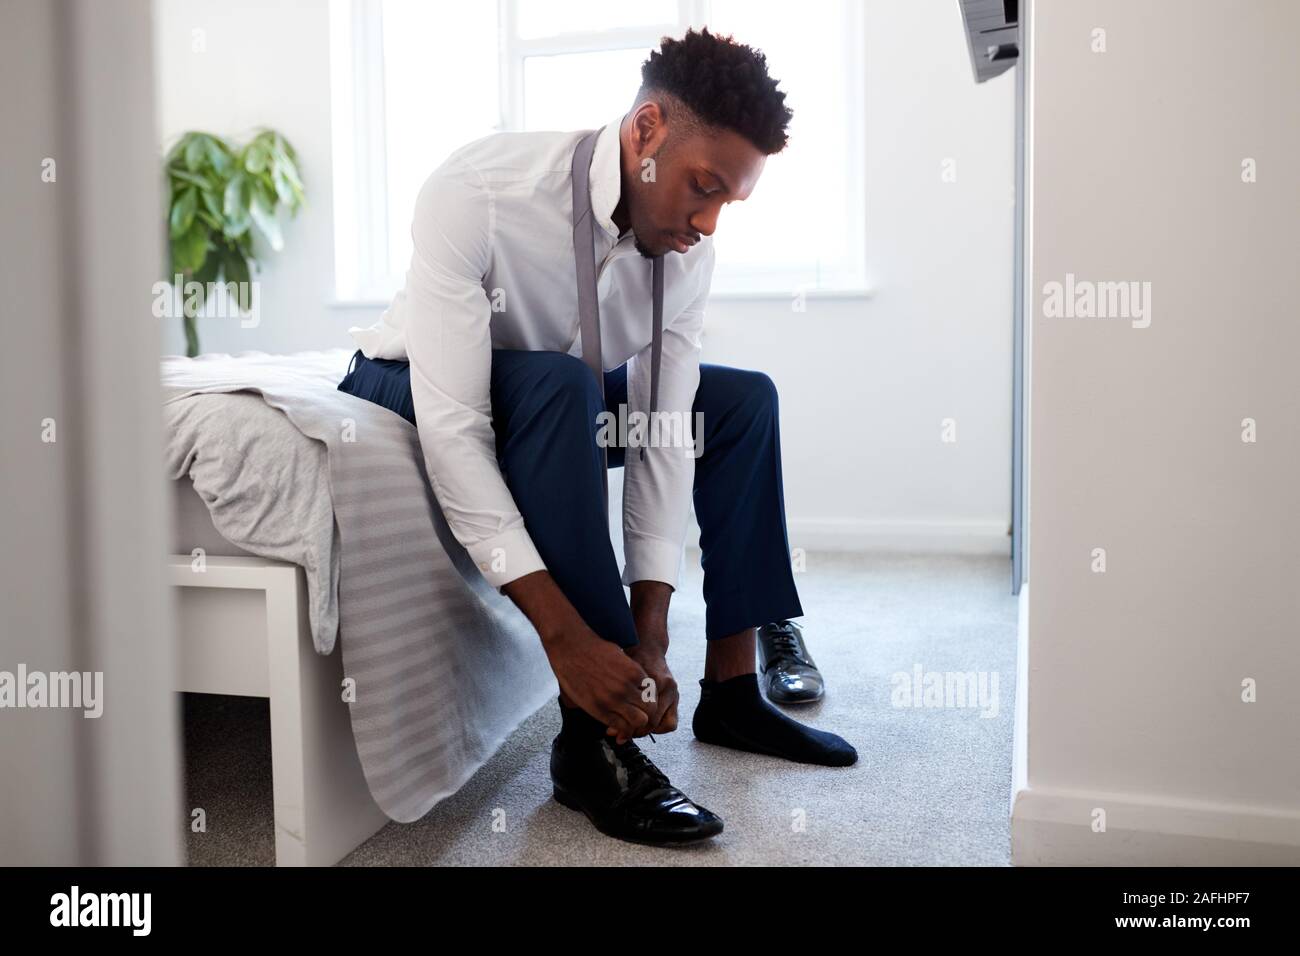 Businessman At home sitting on Bed mise sur les chaussures avant de quitter pour le travail Banque D'Images